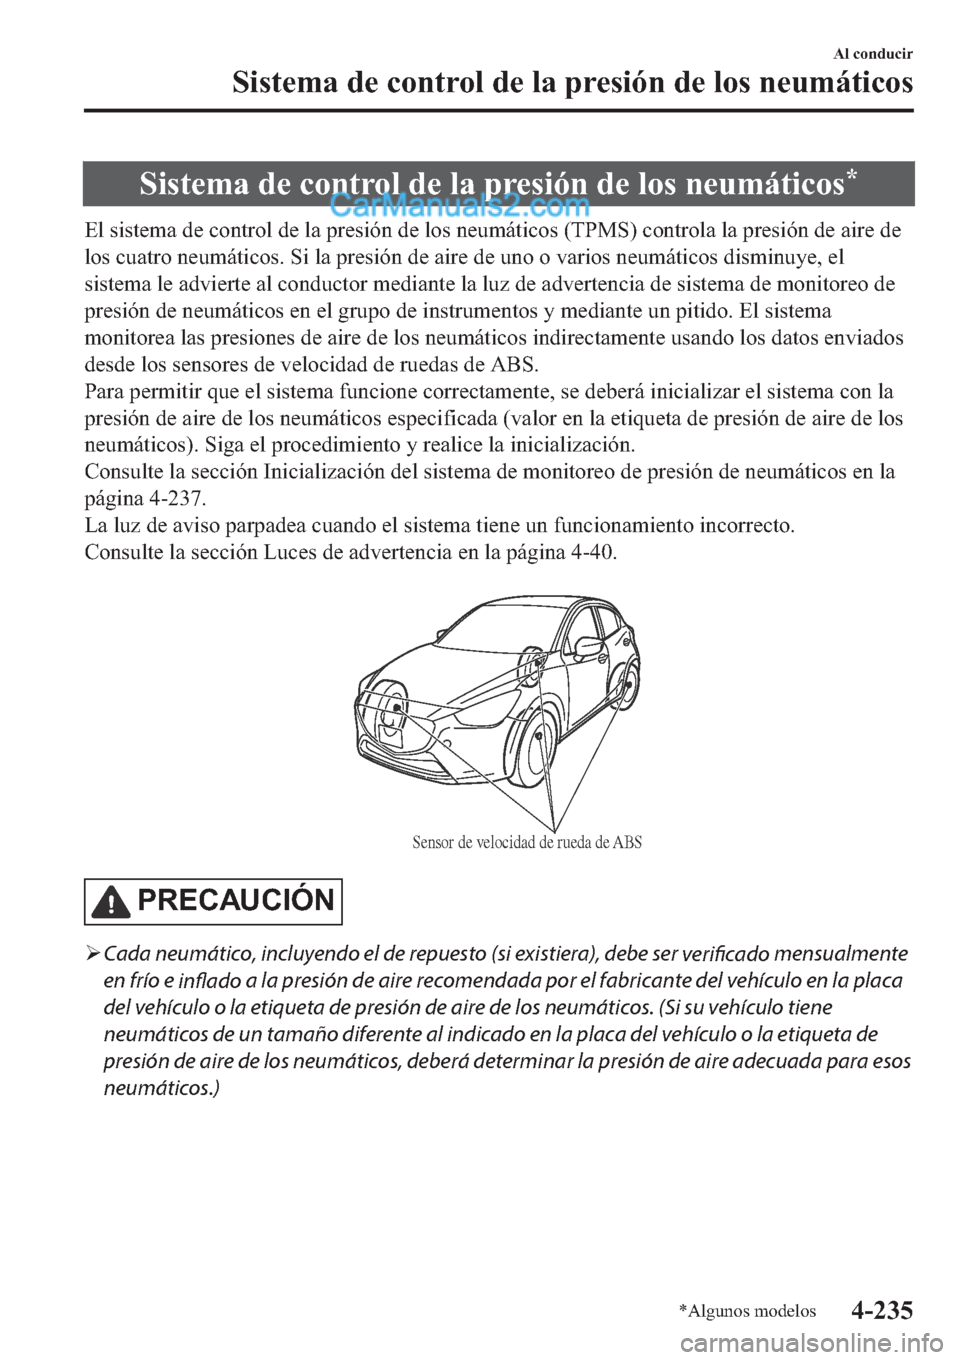 MAZDA MODEL 2 2019  Manual del propietario (in Spanish) �6�L�V�W�H�P�D��G�H��F�R�Q�W�U�R�O��G�H��O�D��S�U�H�V�L�y�Q��G�H��O�R�V��Q�H�X�P�i�W�L�F�R�V�
�(�O��V�L�V�W�H�P�D��G�H��F�R�Q�W�U�R�O��G�H��O�D��S�U�H�V�L�y�Q��G�H��O�R�V��Q�H�X�P�i�